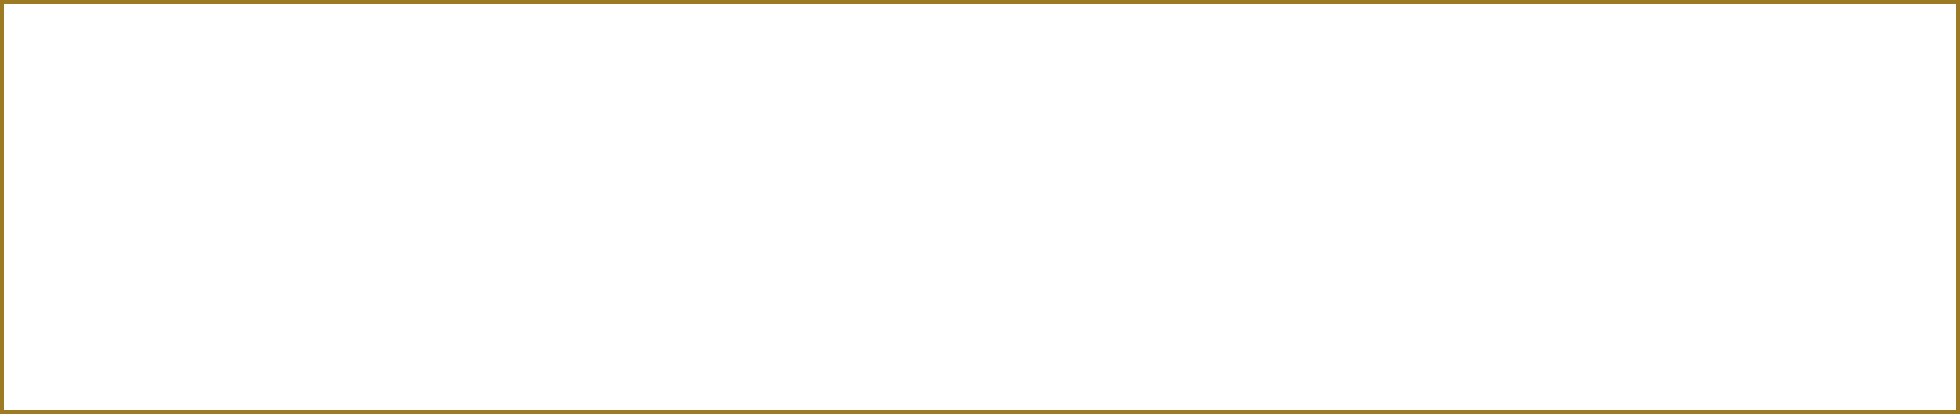 2023年11月30日(木)COCONO SUSUKINO 1階にオープン